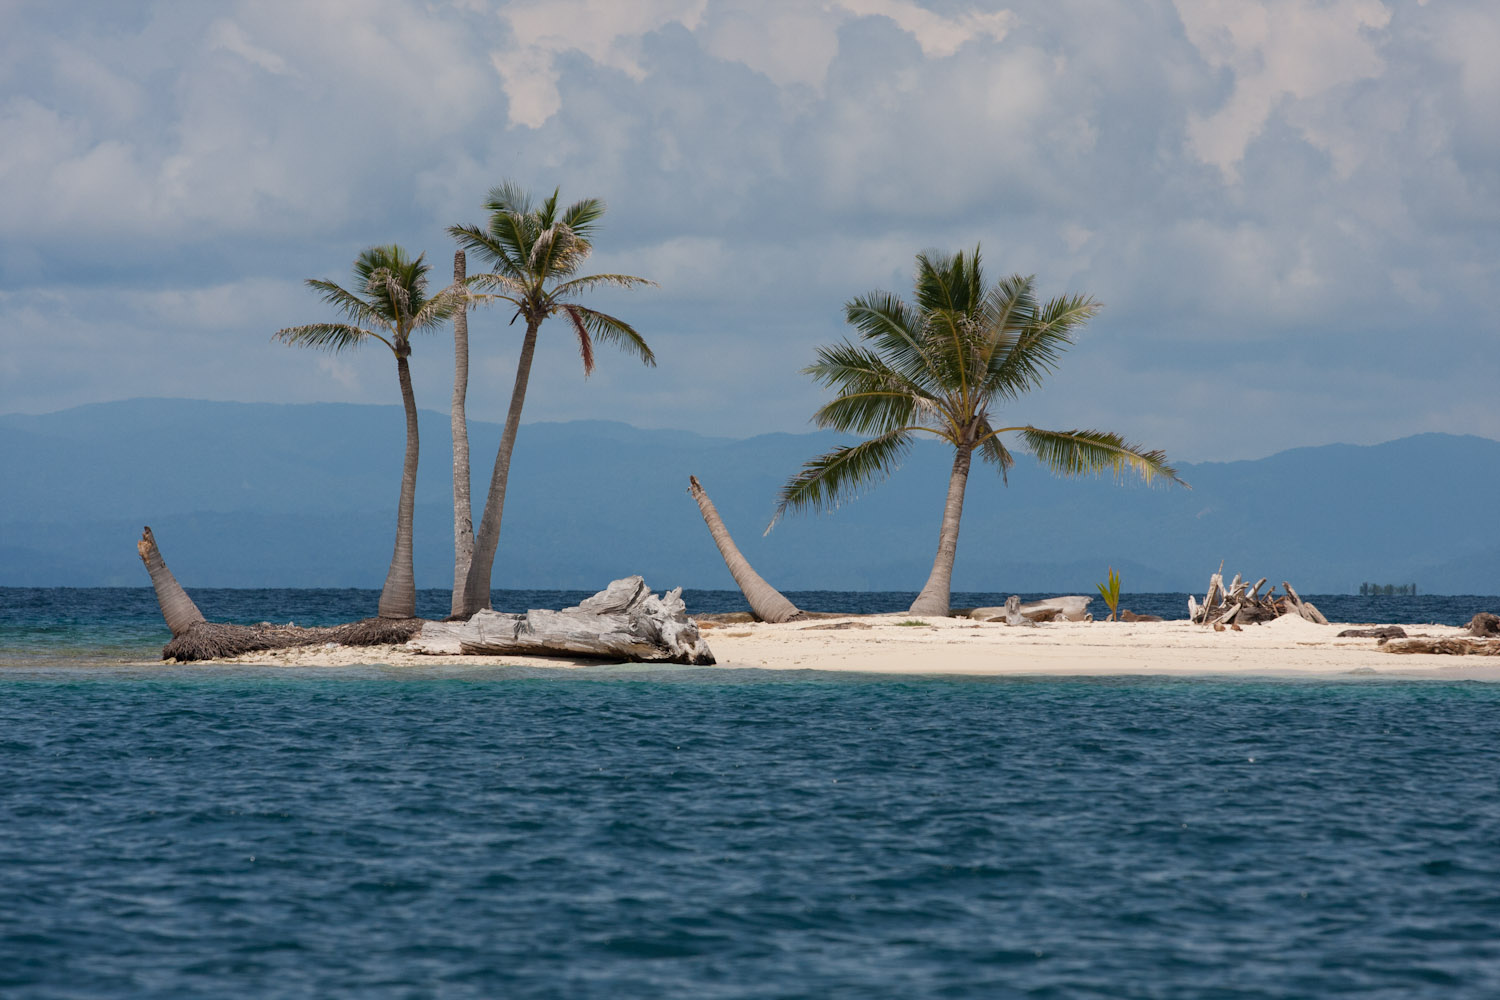 Isla solitaria del archipiélago de San Blas, Panamá